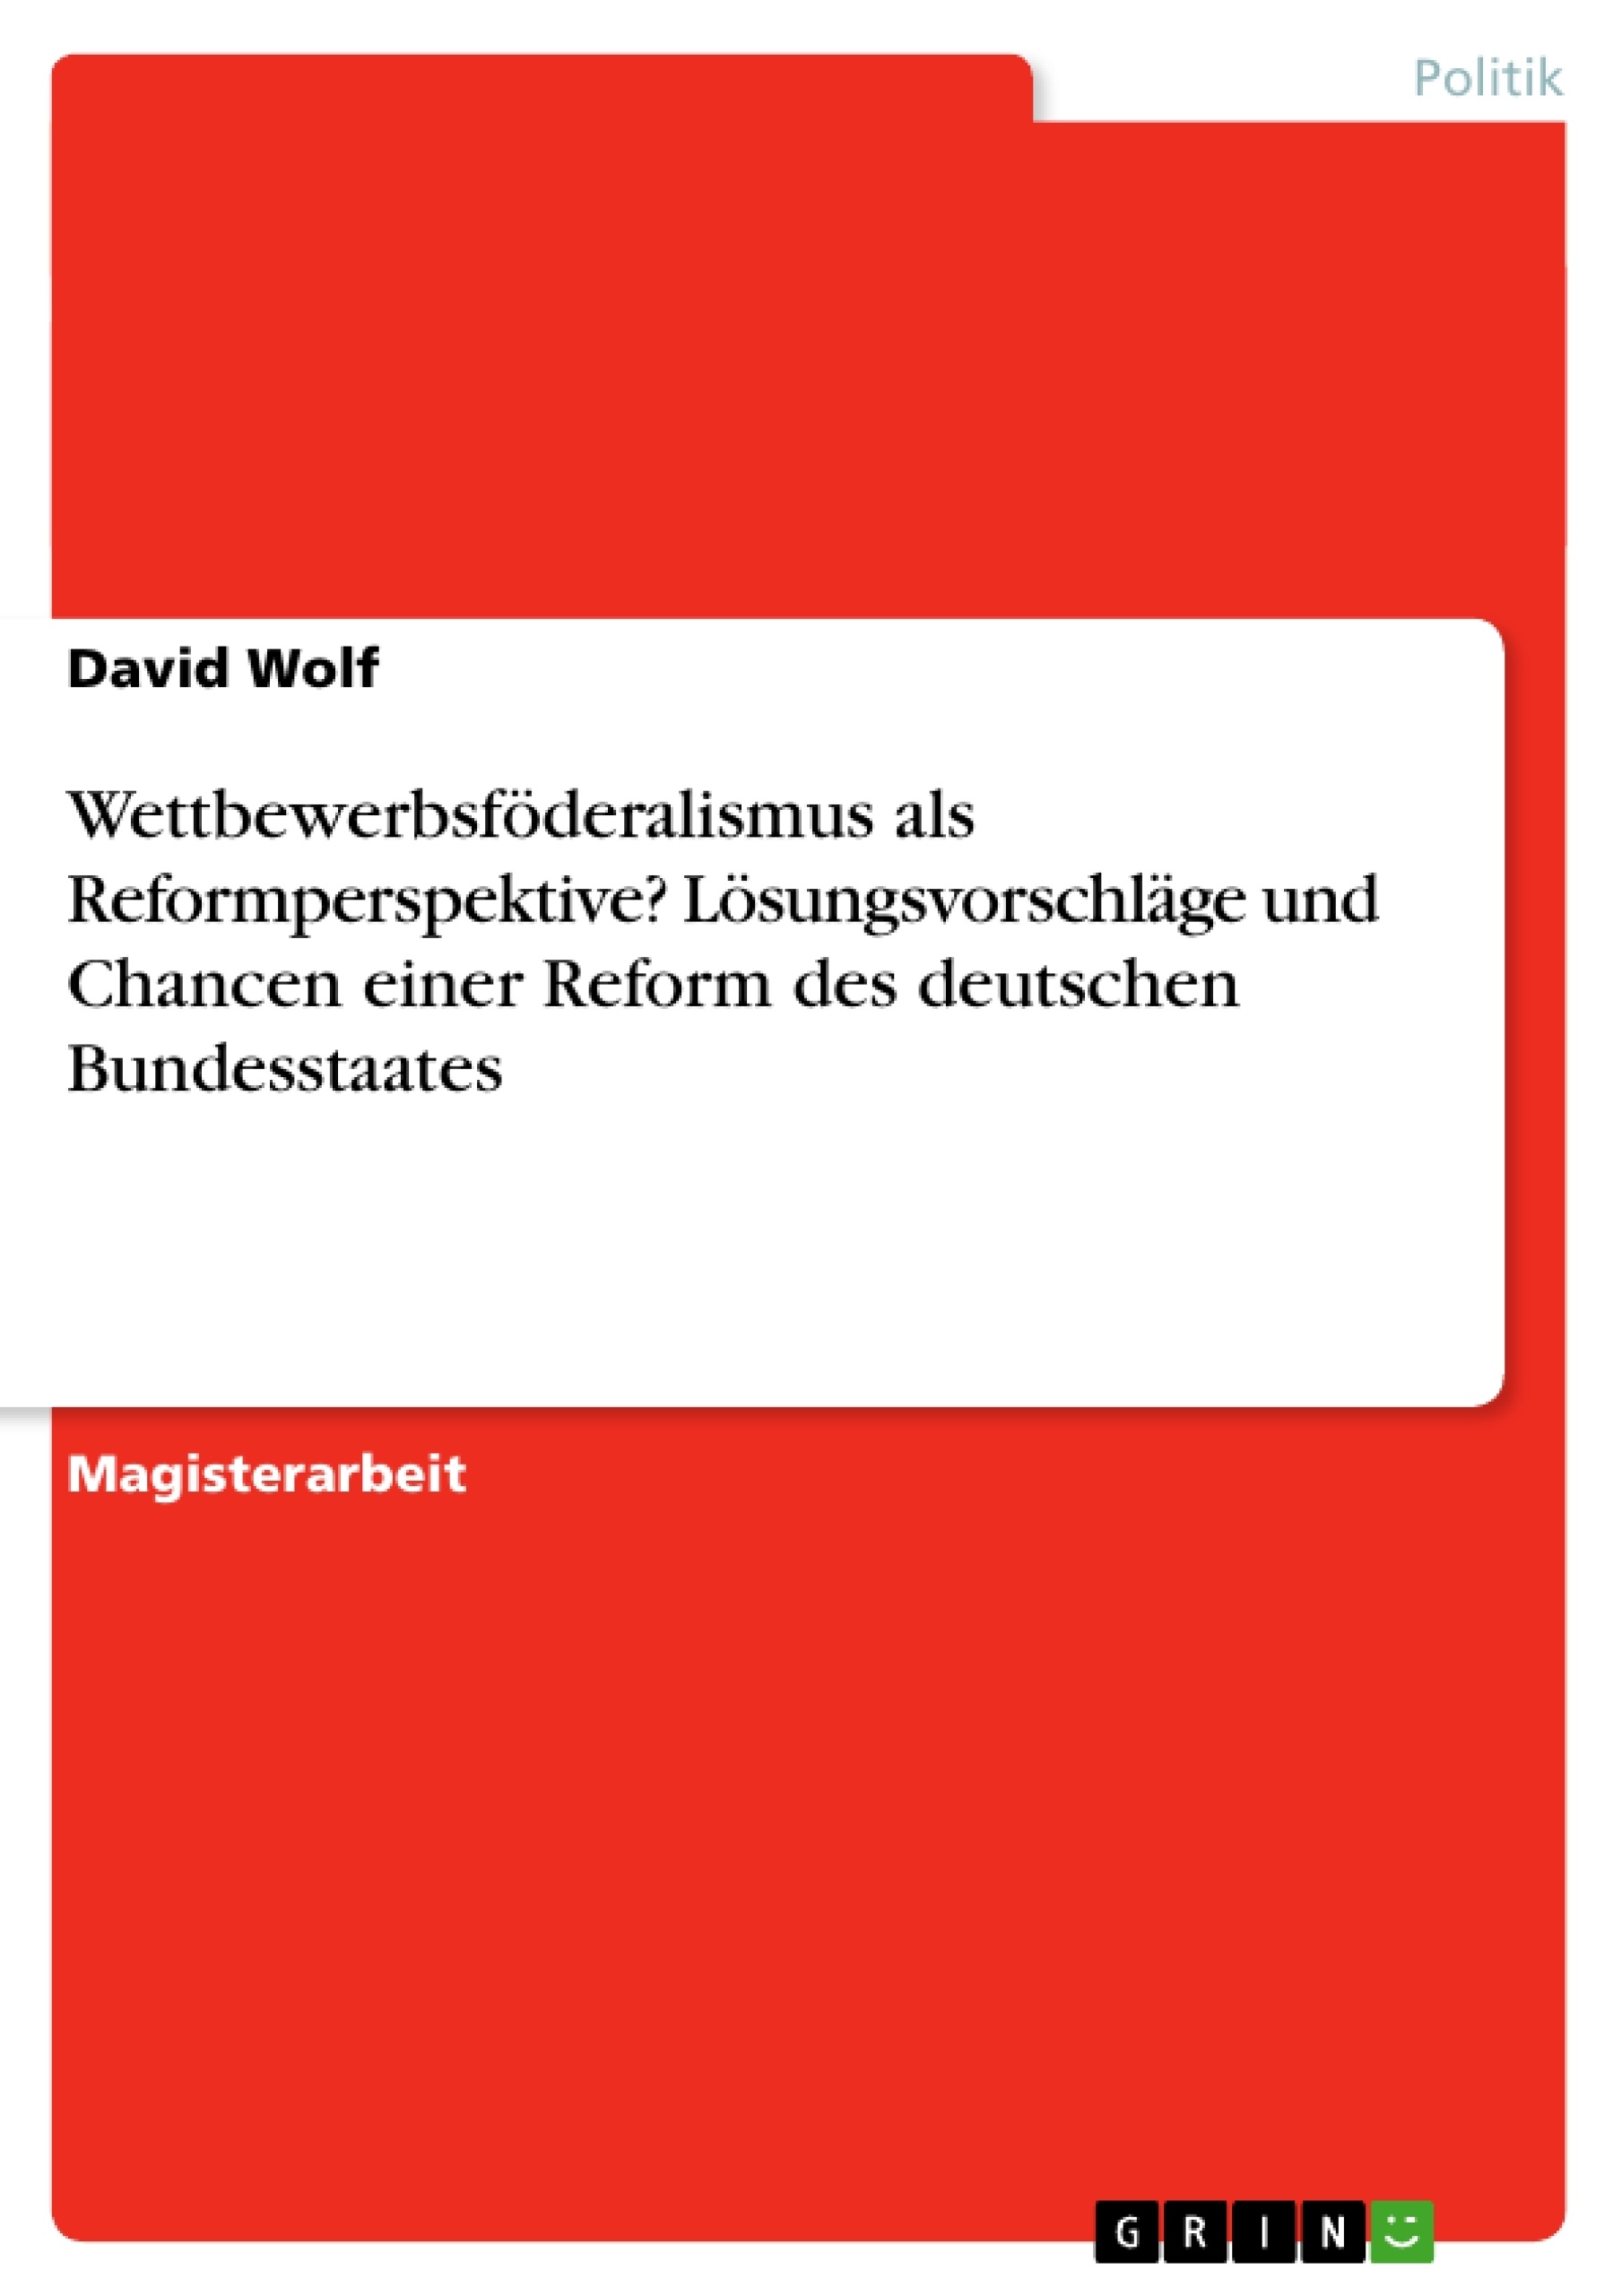 Titre: Wettbewerbsföderalismus als Reformperspektive? Lösungsvorschläge und Chancen einer Reform des deutschen Bundesstaates